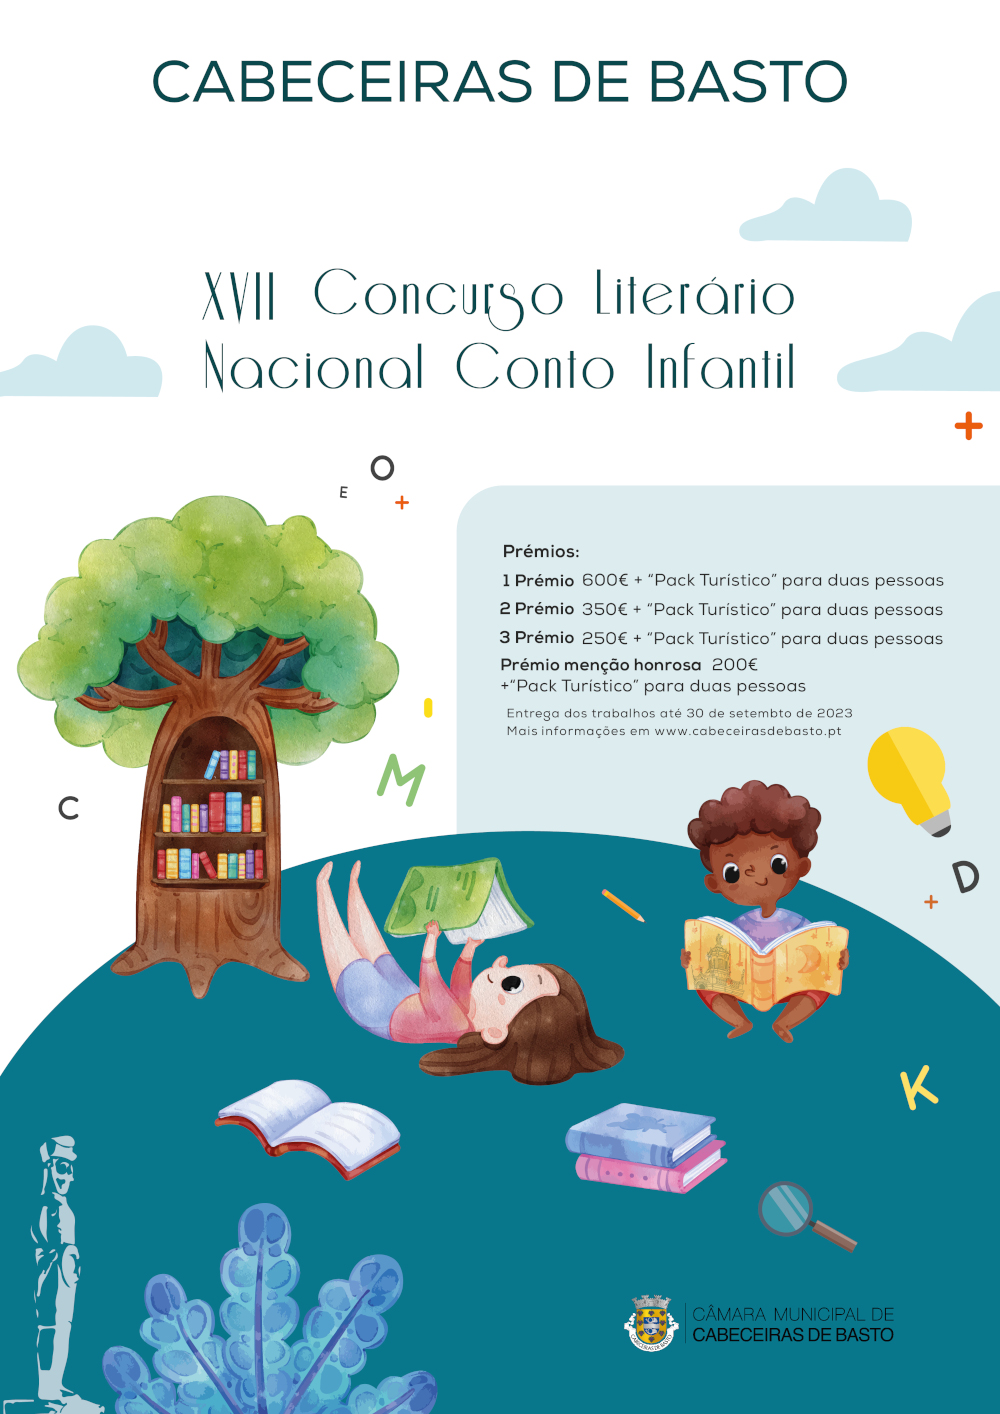 XVII Concurso Literário Nacional Conto Infantil